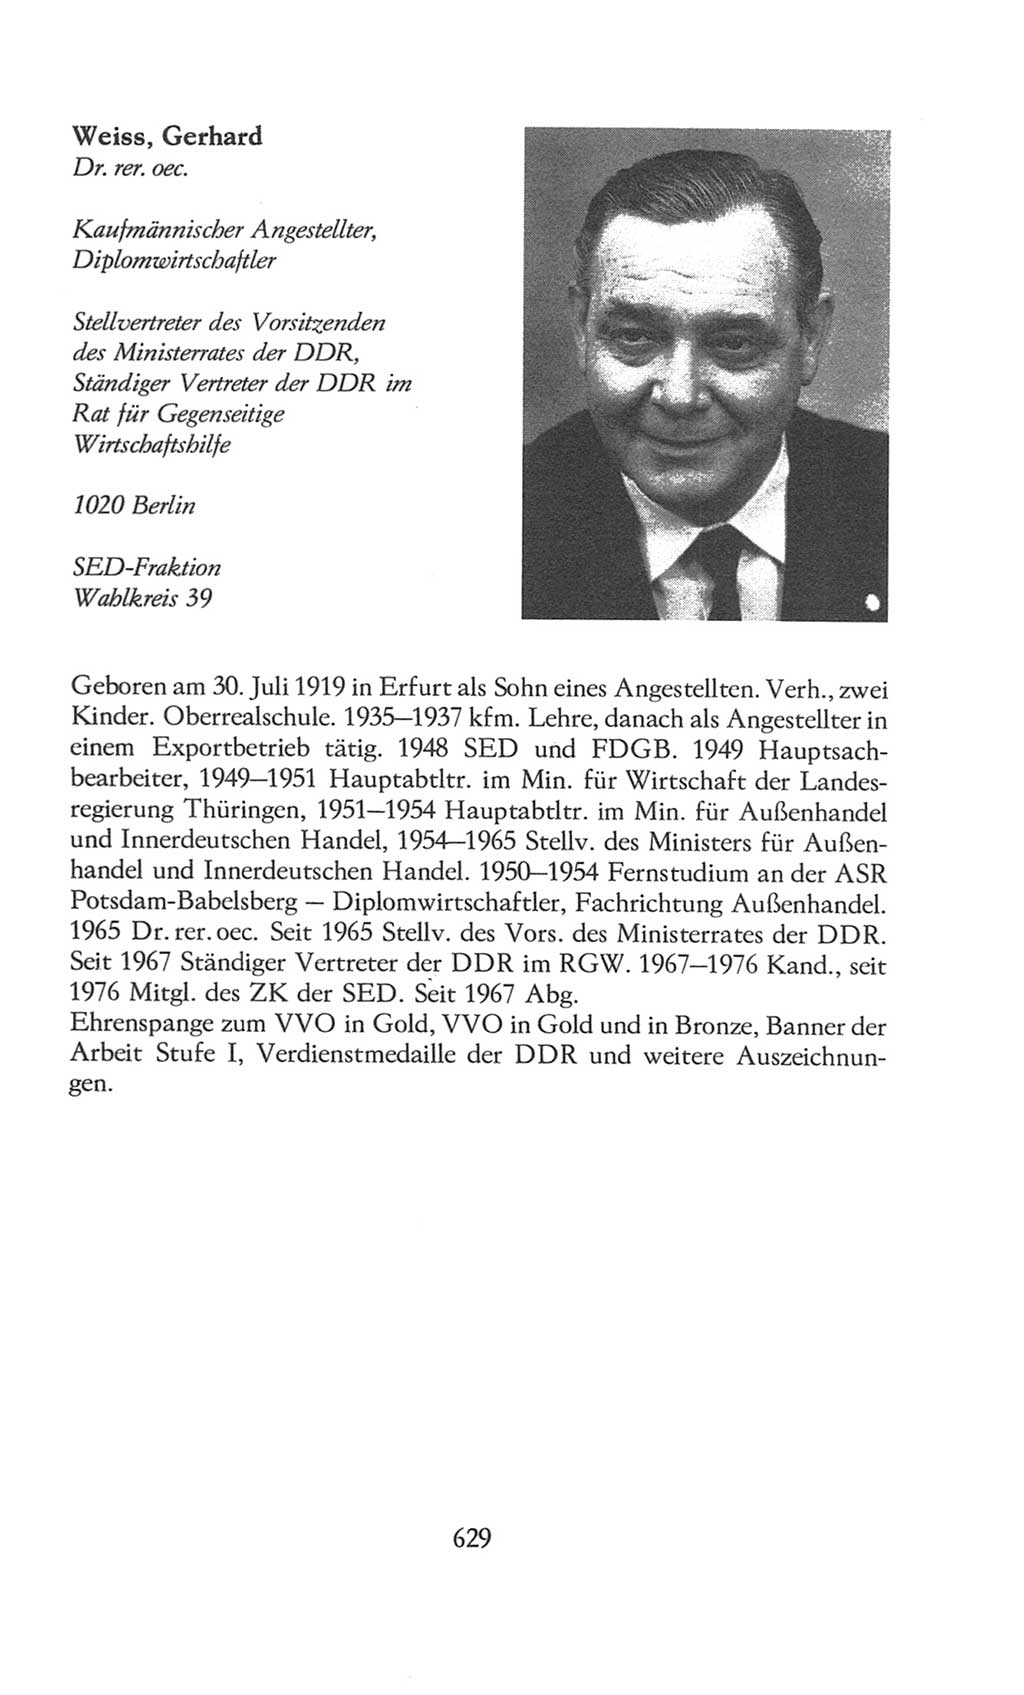 Volkskammer (VK) der Deutschen Demokratischen Republik (DDR), 8. Wahlperiode 1981-1986, Seite 629 (VK. DDR 8. WP. 1981-1986, S. 629)